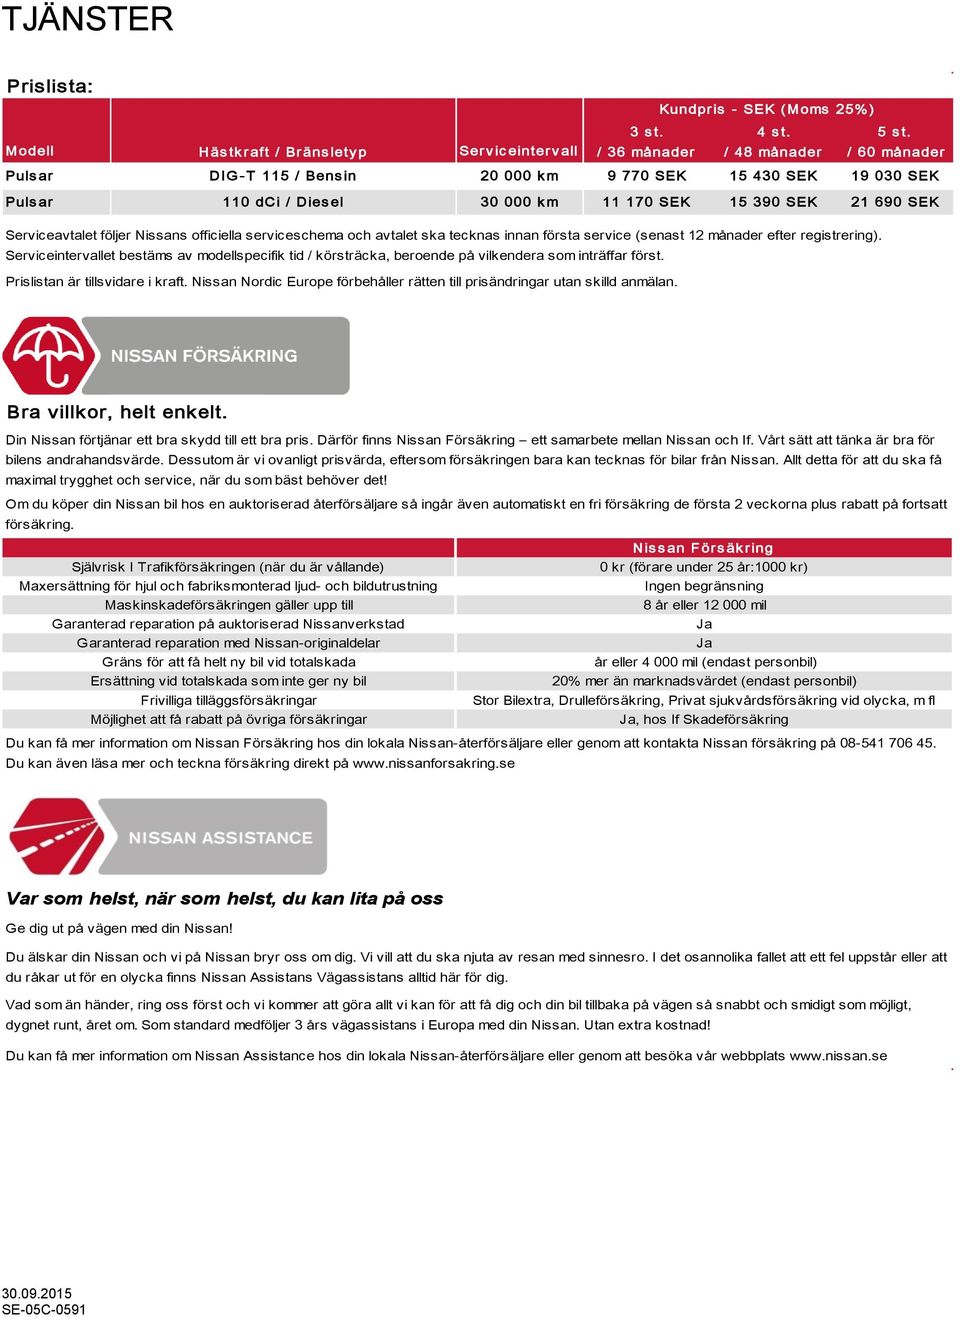 m 11 170 SEK 15 390 SEK 21 690 SEK Serviceavtalet följer Nissans officiella serviceschema och avtalet ska tecknas innan första service (senast 12 månader efter registrering).